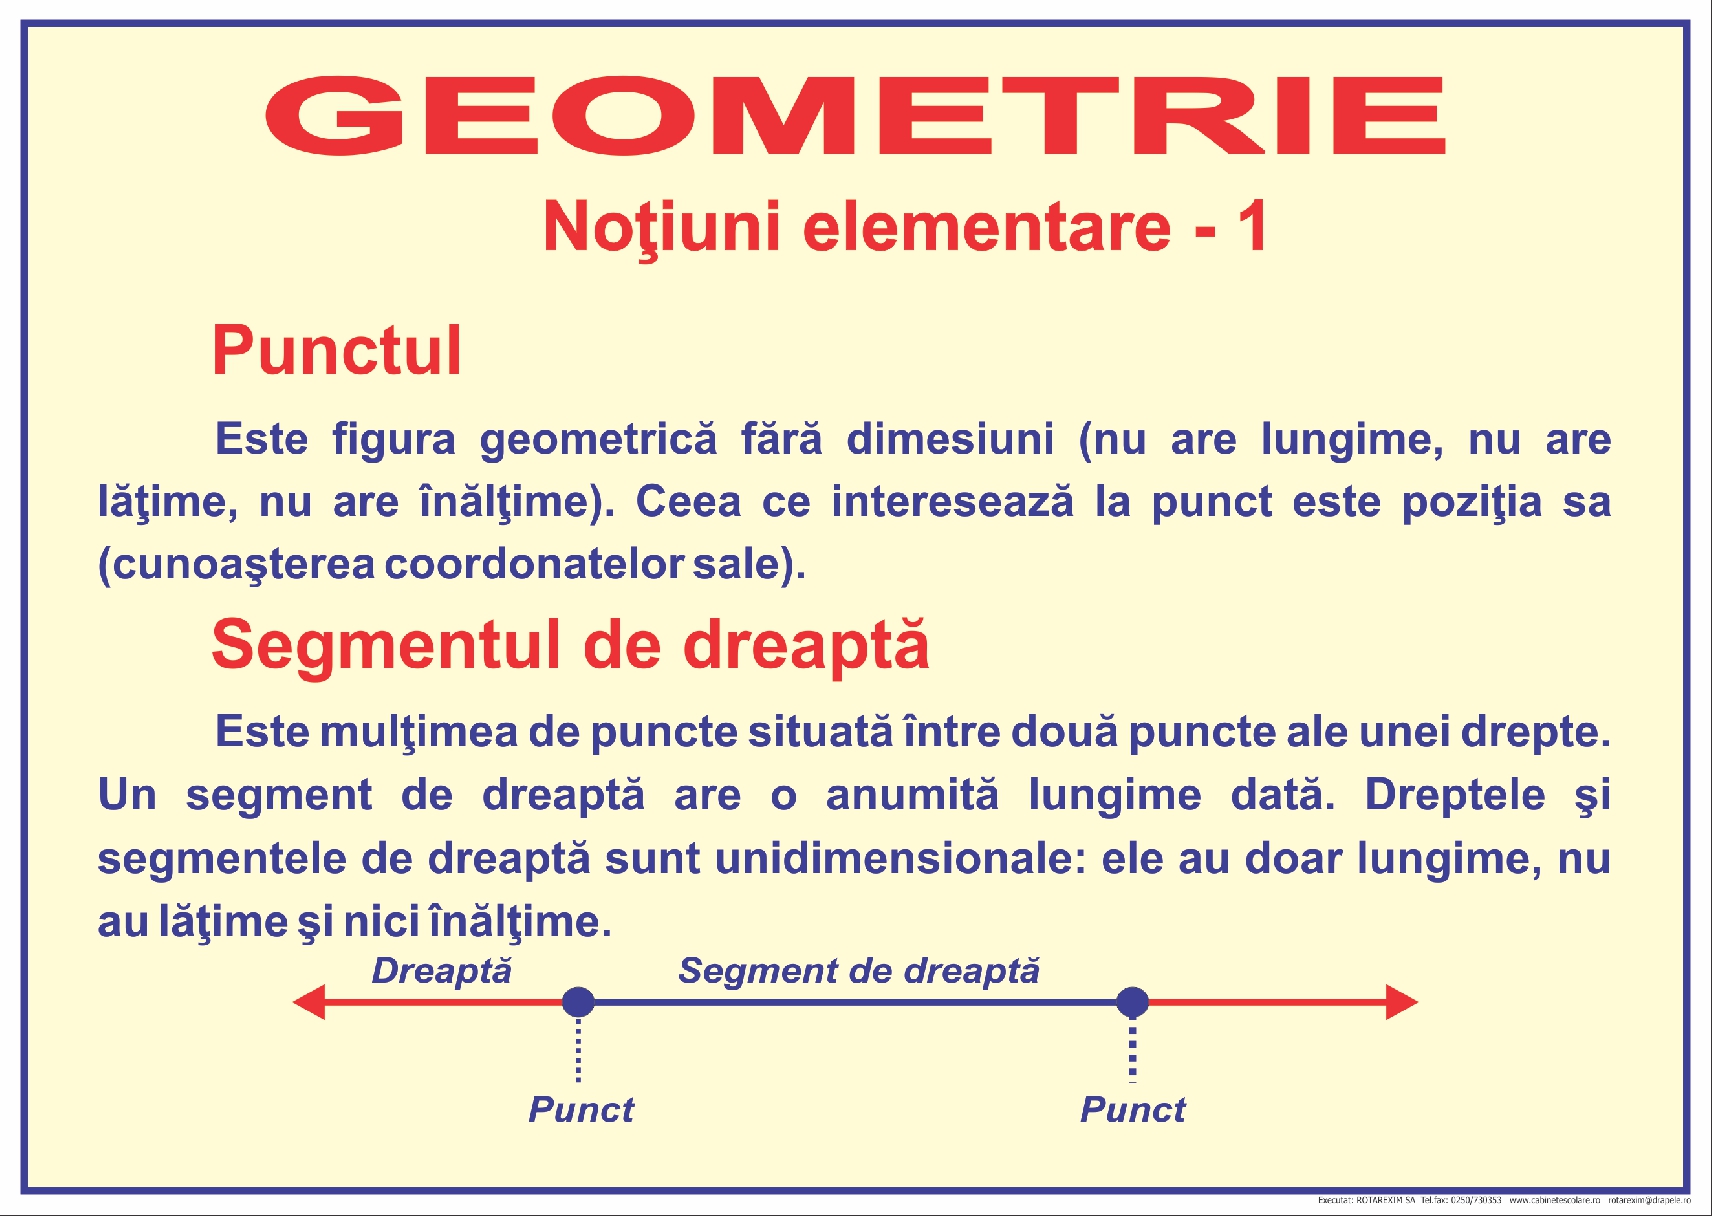 Noțiuni elementare de geometrie - 1